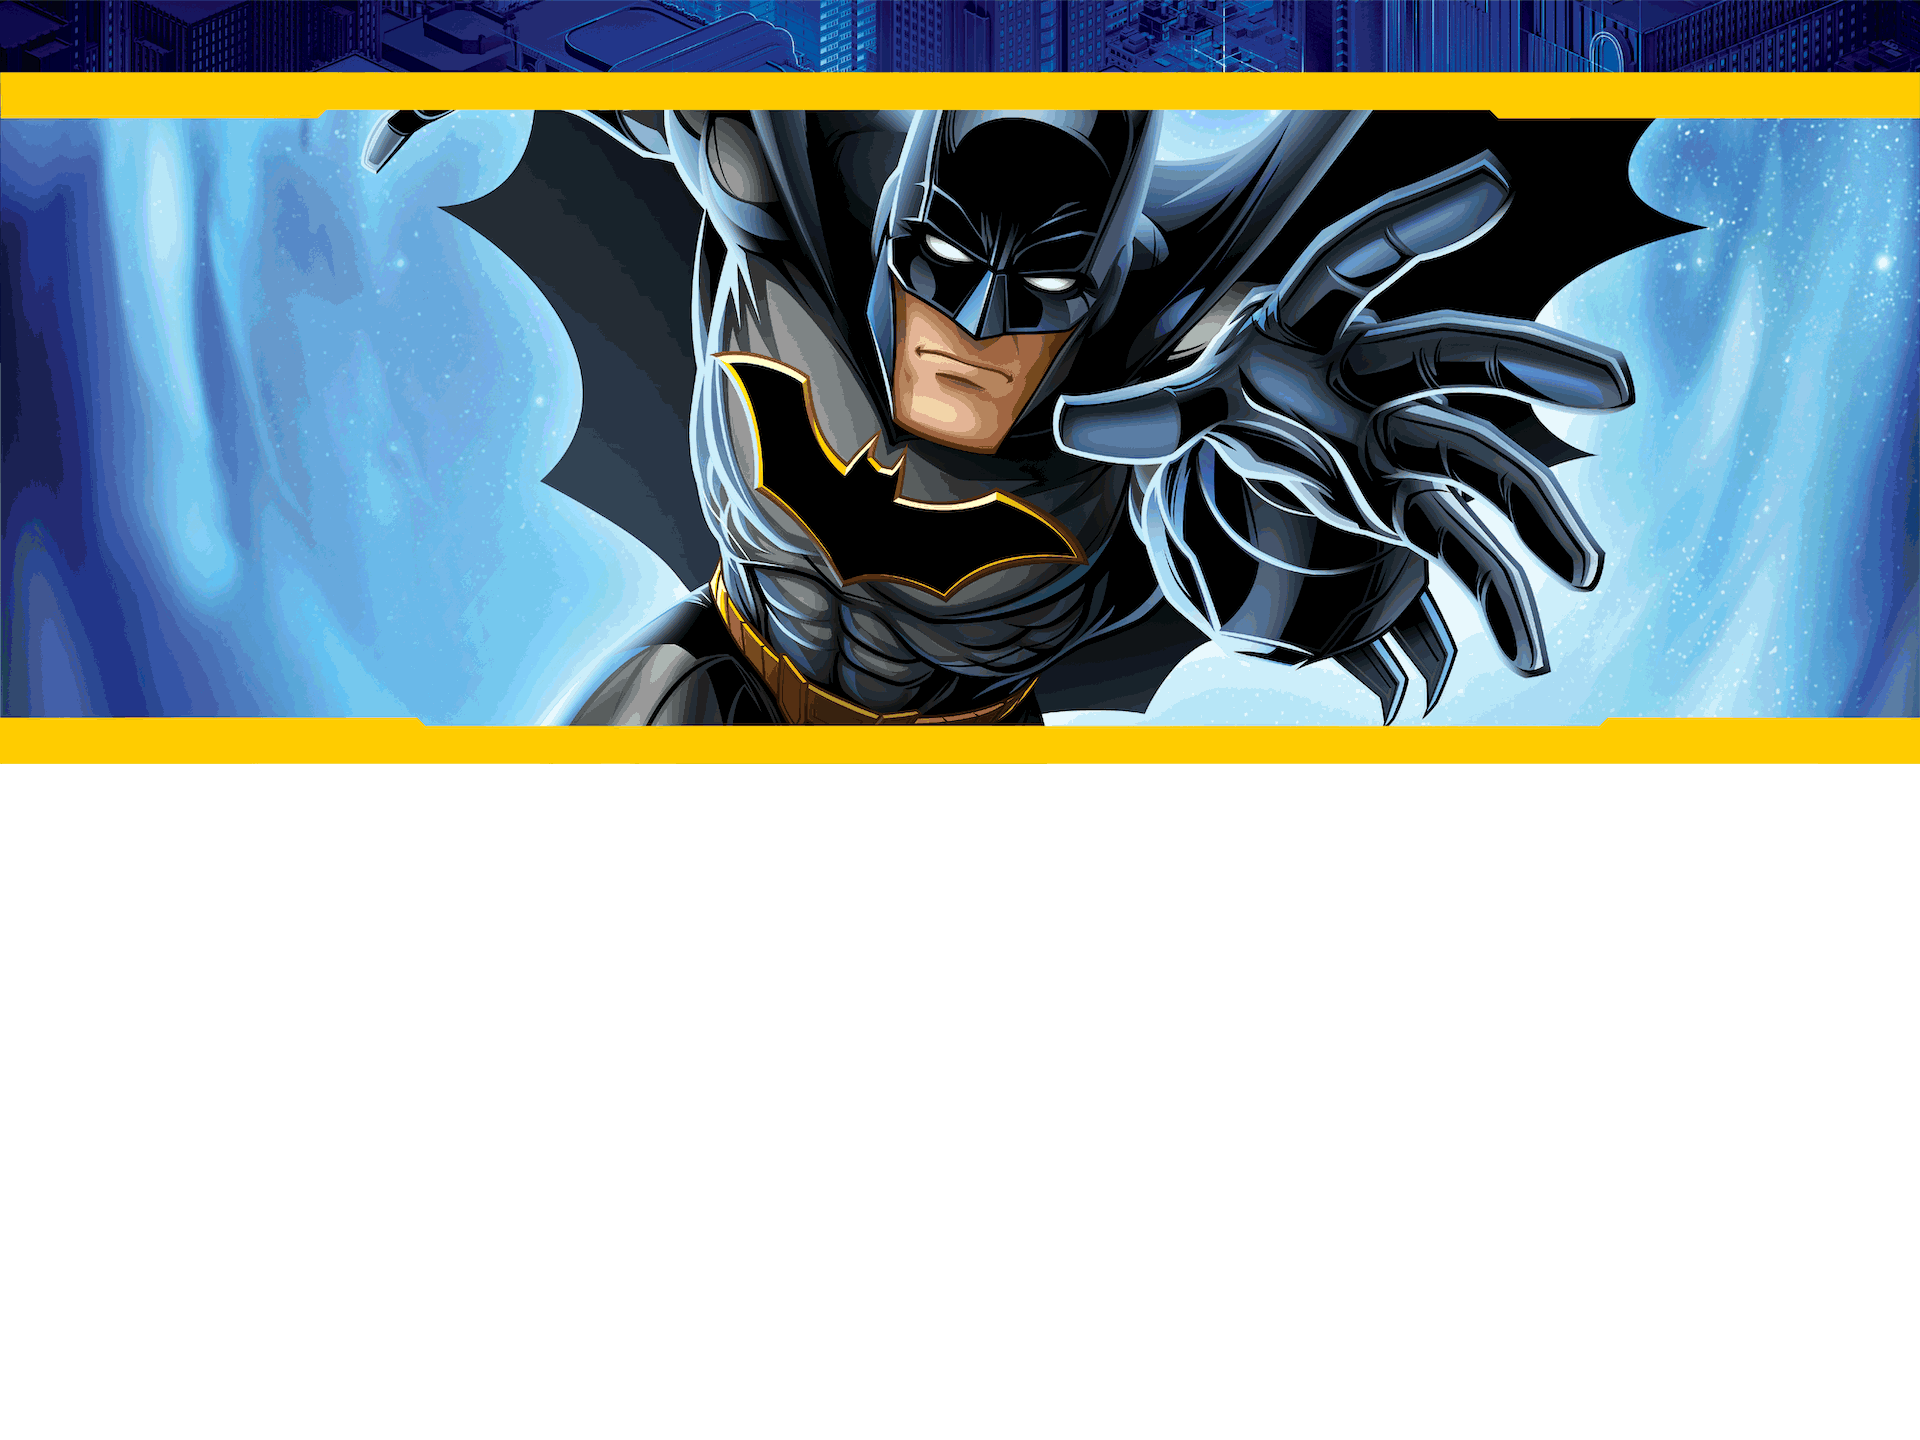 Batman | Online Videos and Activities | Cartoon Network